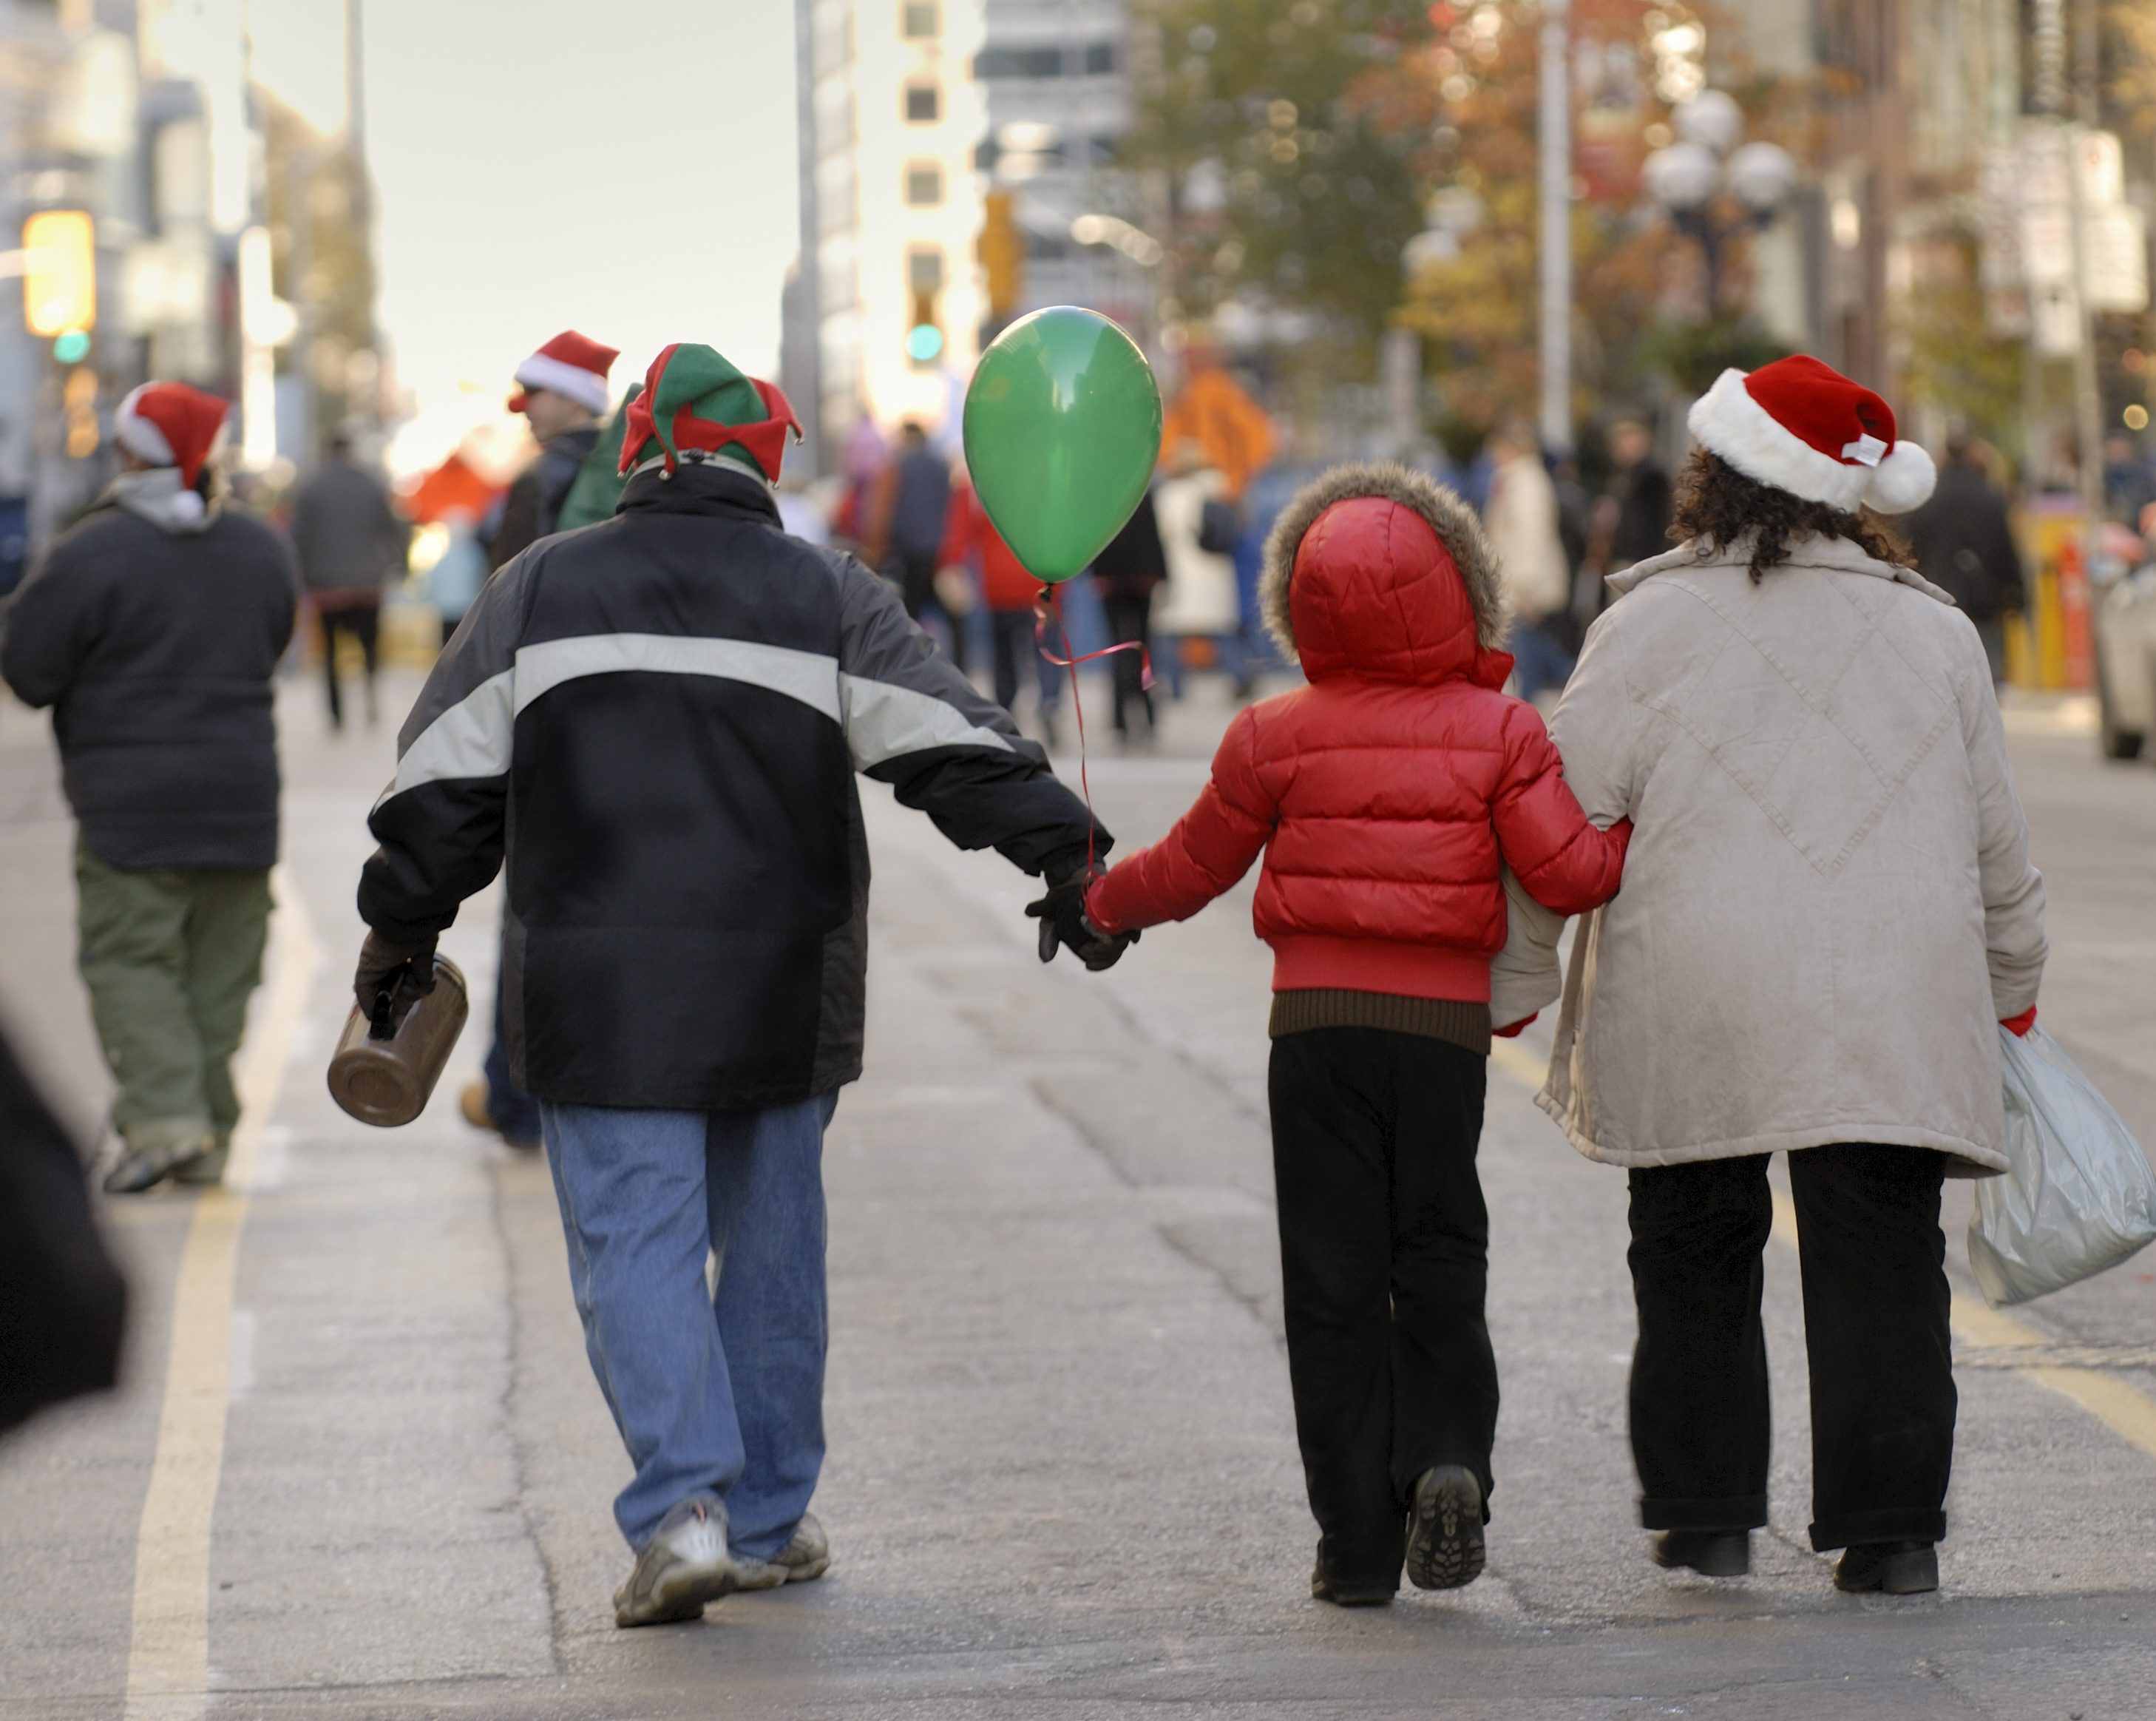 Febra cumpărăturilor de Crăciun a aglomerat orașele, în plină pandemie. Cozi la magazine, în București